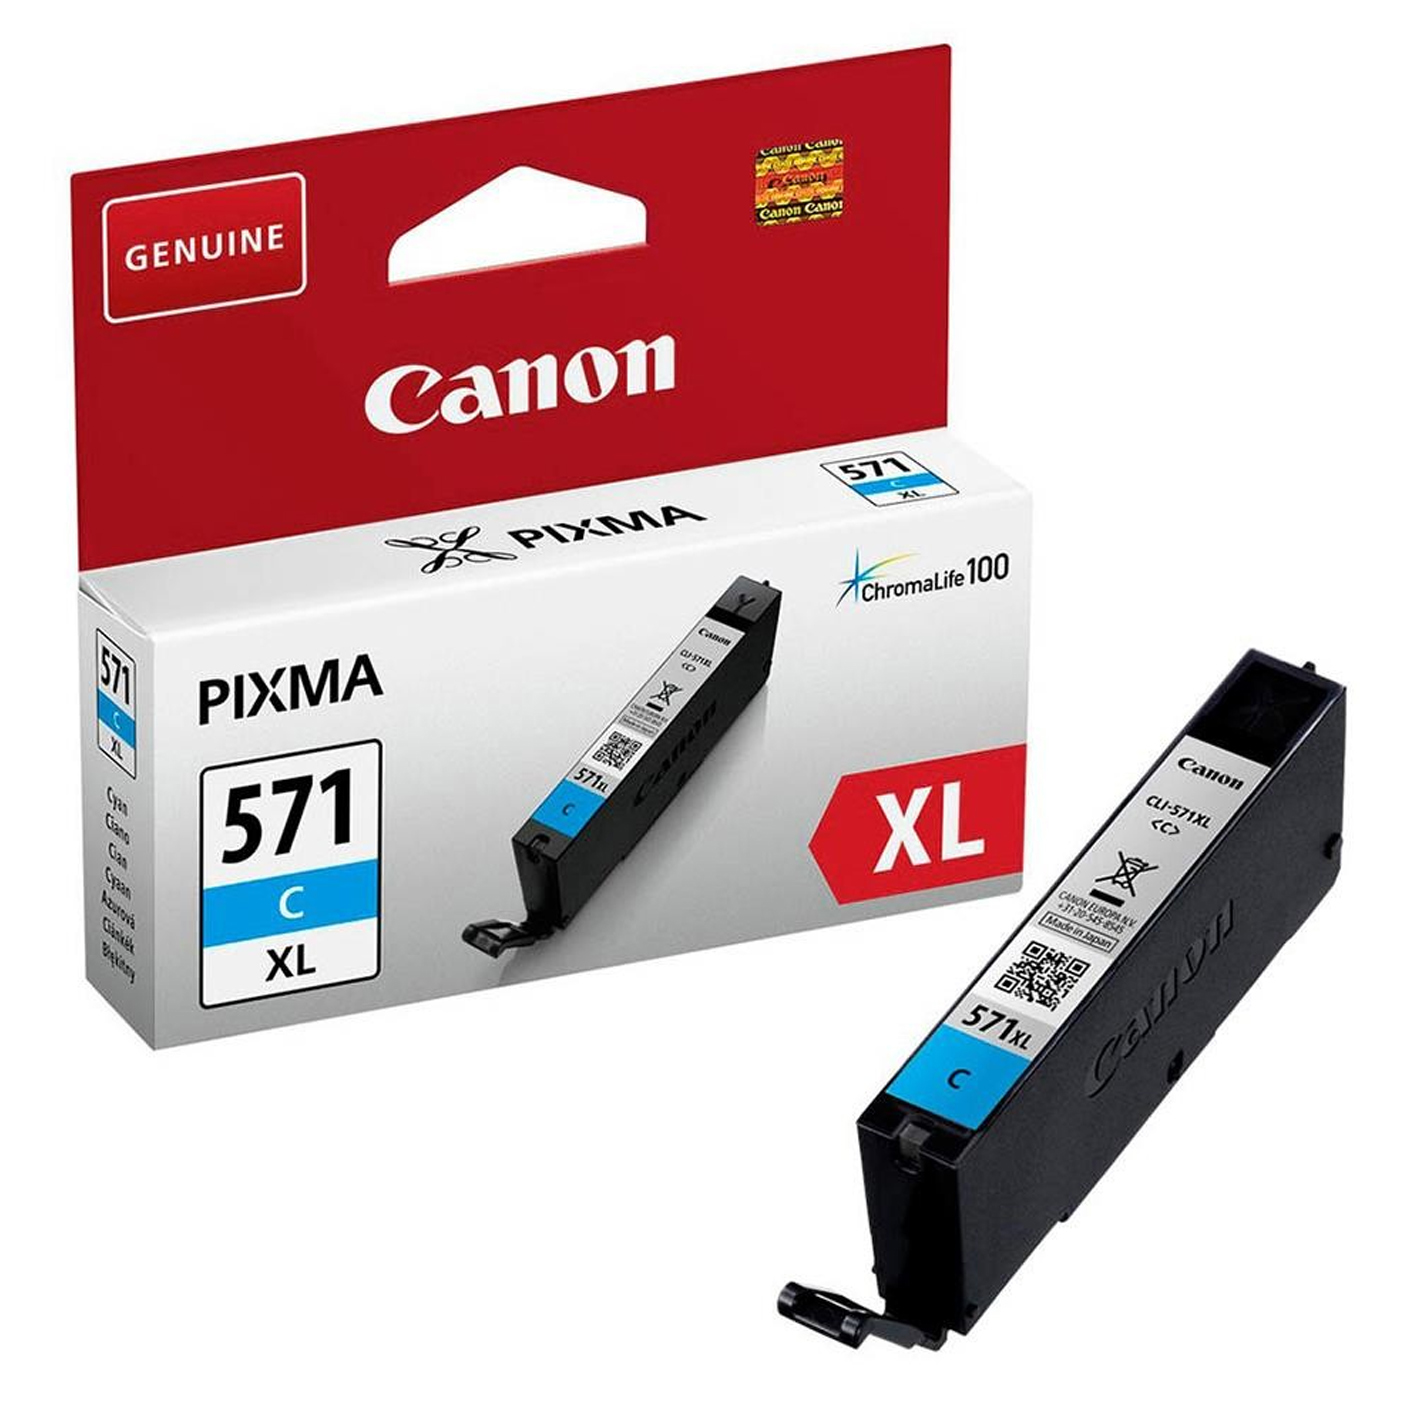 Cli 571xl C Canon Supplies Ink Hv 0332c001 4549292032857